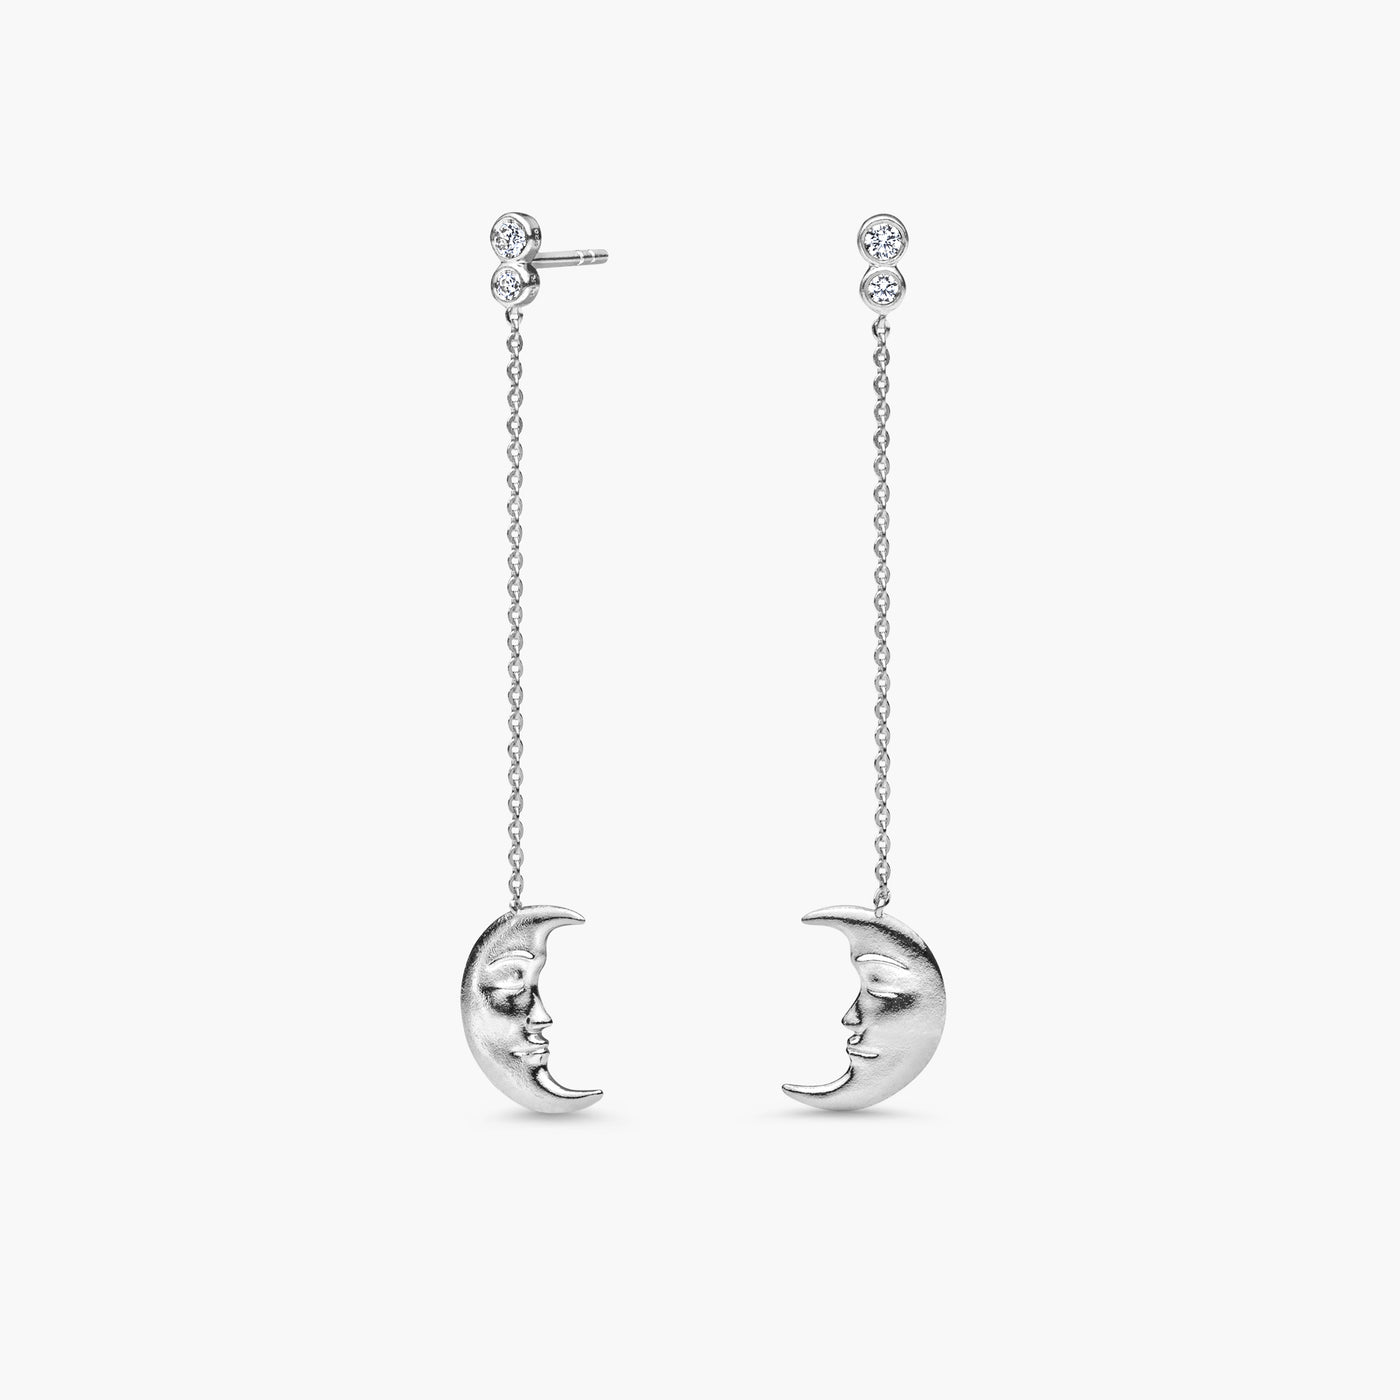 Hanging Moon Earrings • White Zirconia